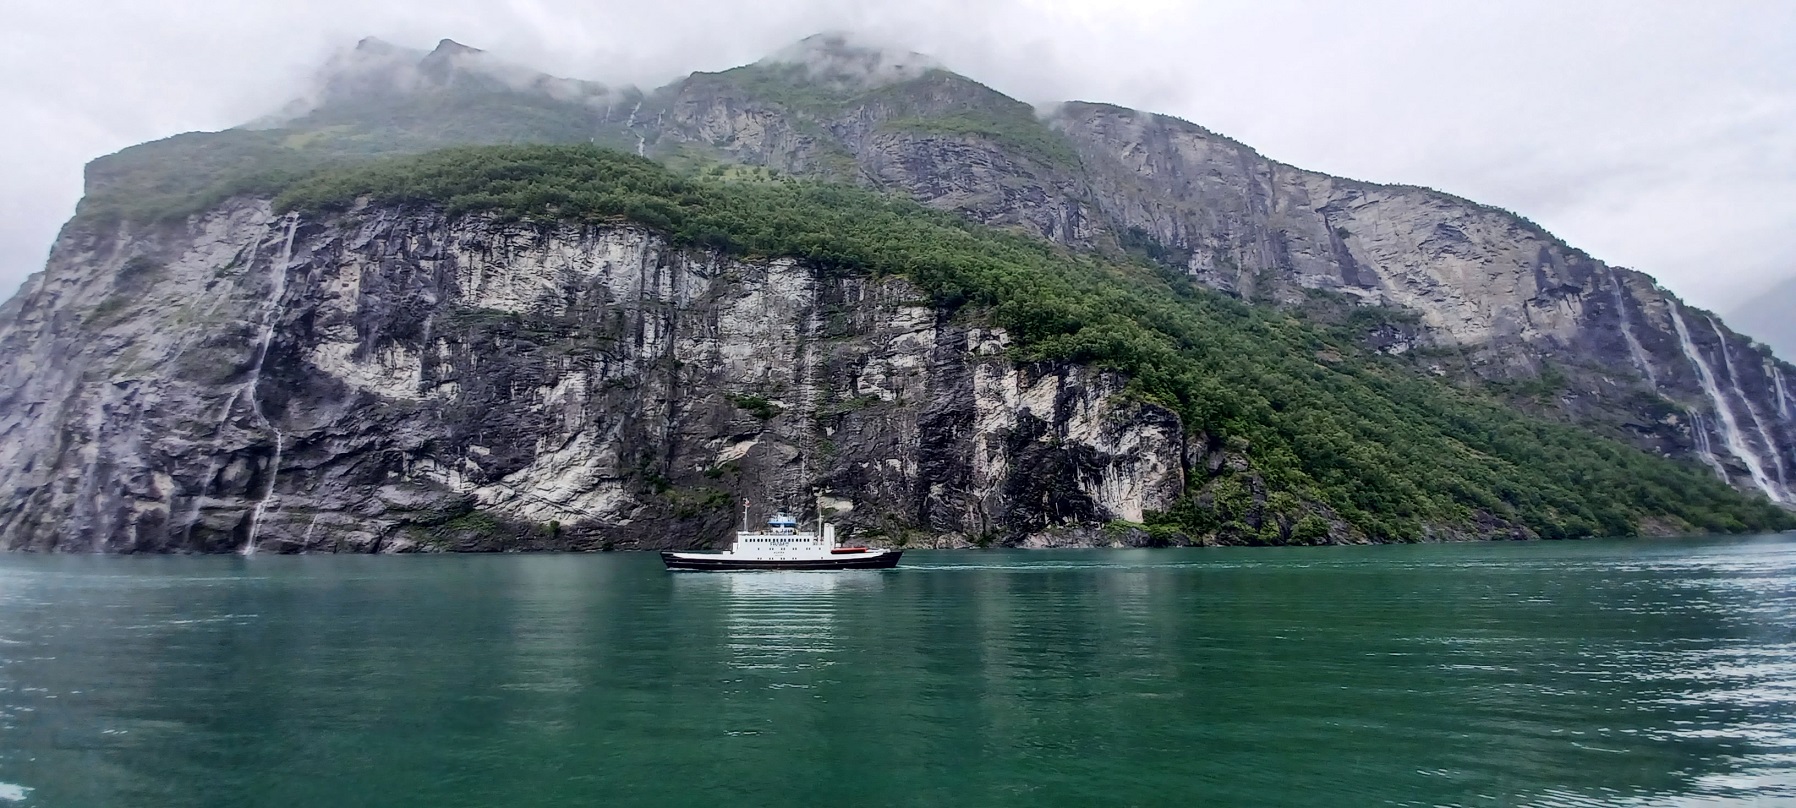 Hajók mindig jönnek-mennek. Az a terv, hogy ebben a fjordban hamarosan már csak villanyhajtású járművek közlekedhessenek, beleértve a kompot is